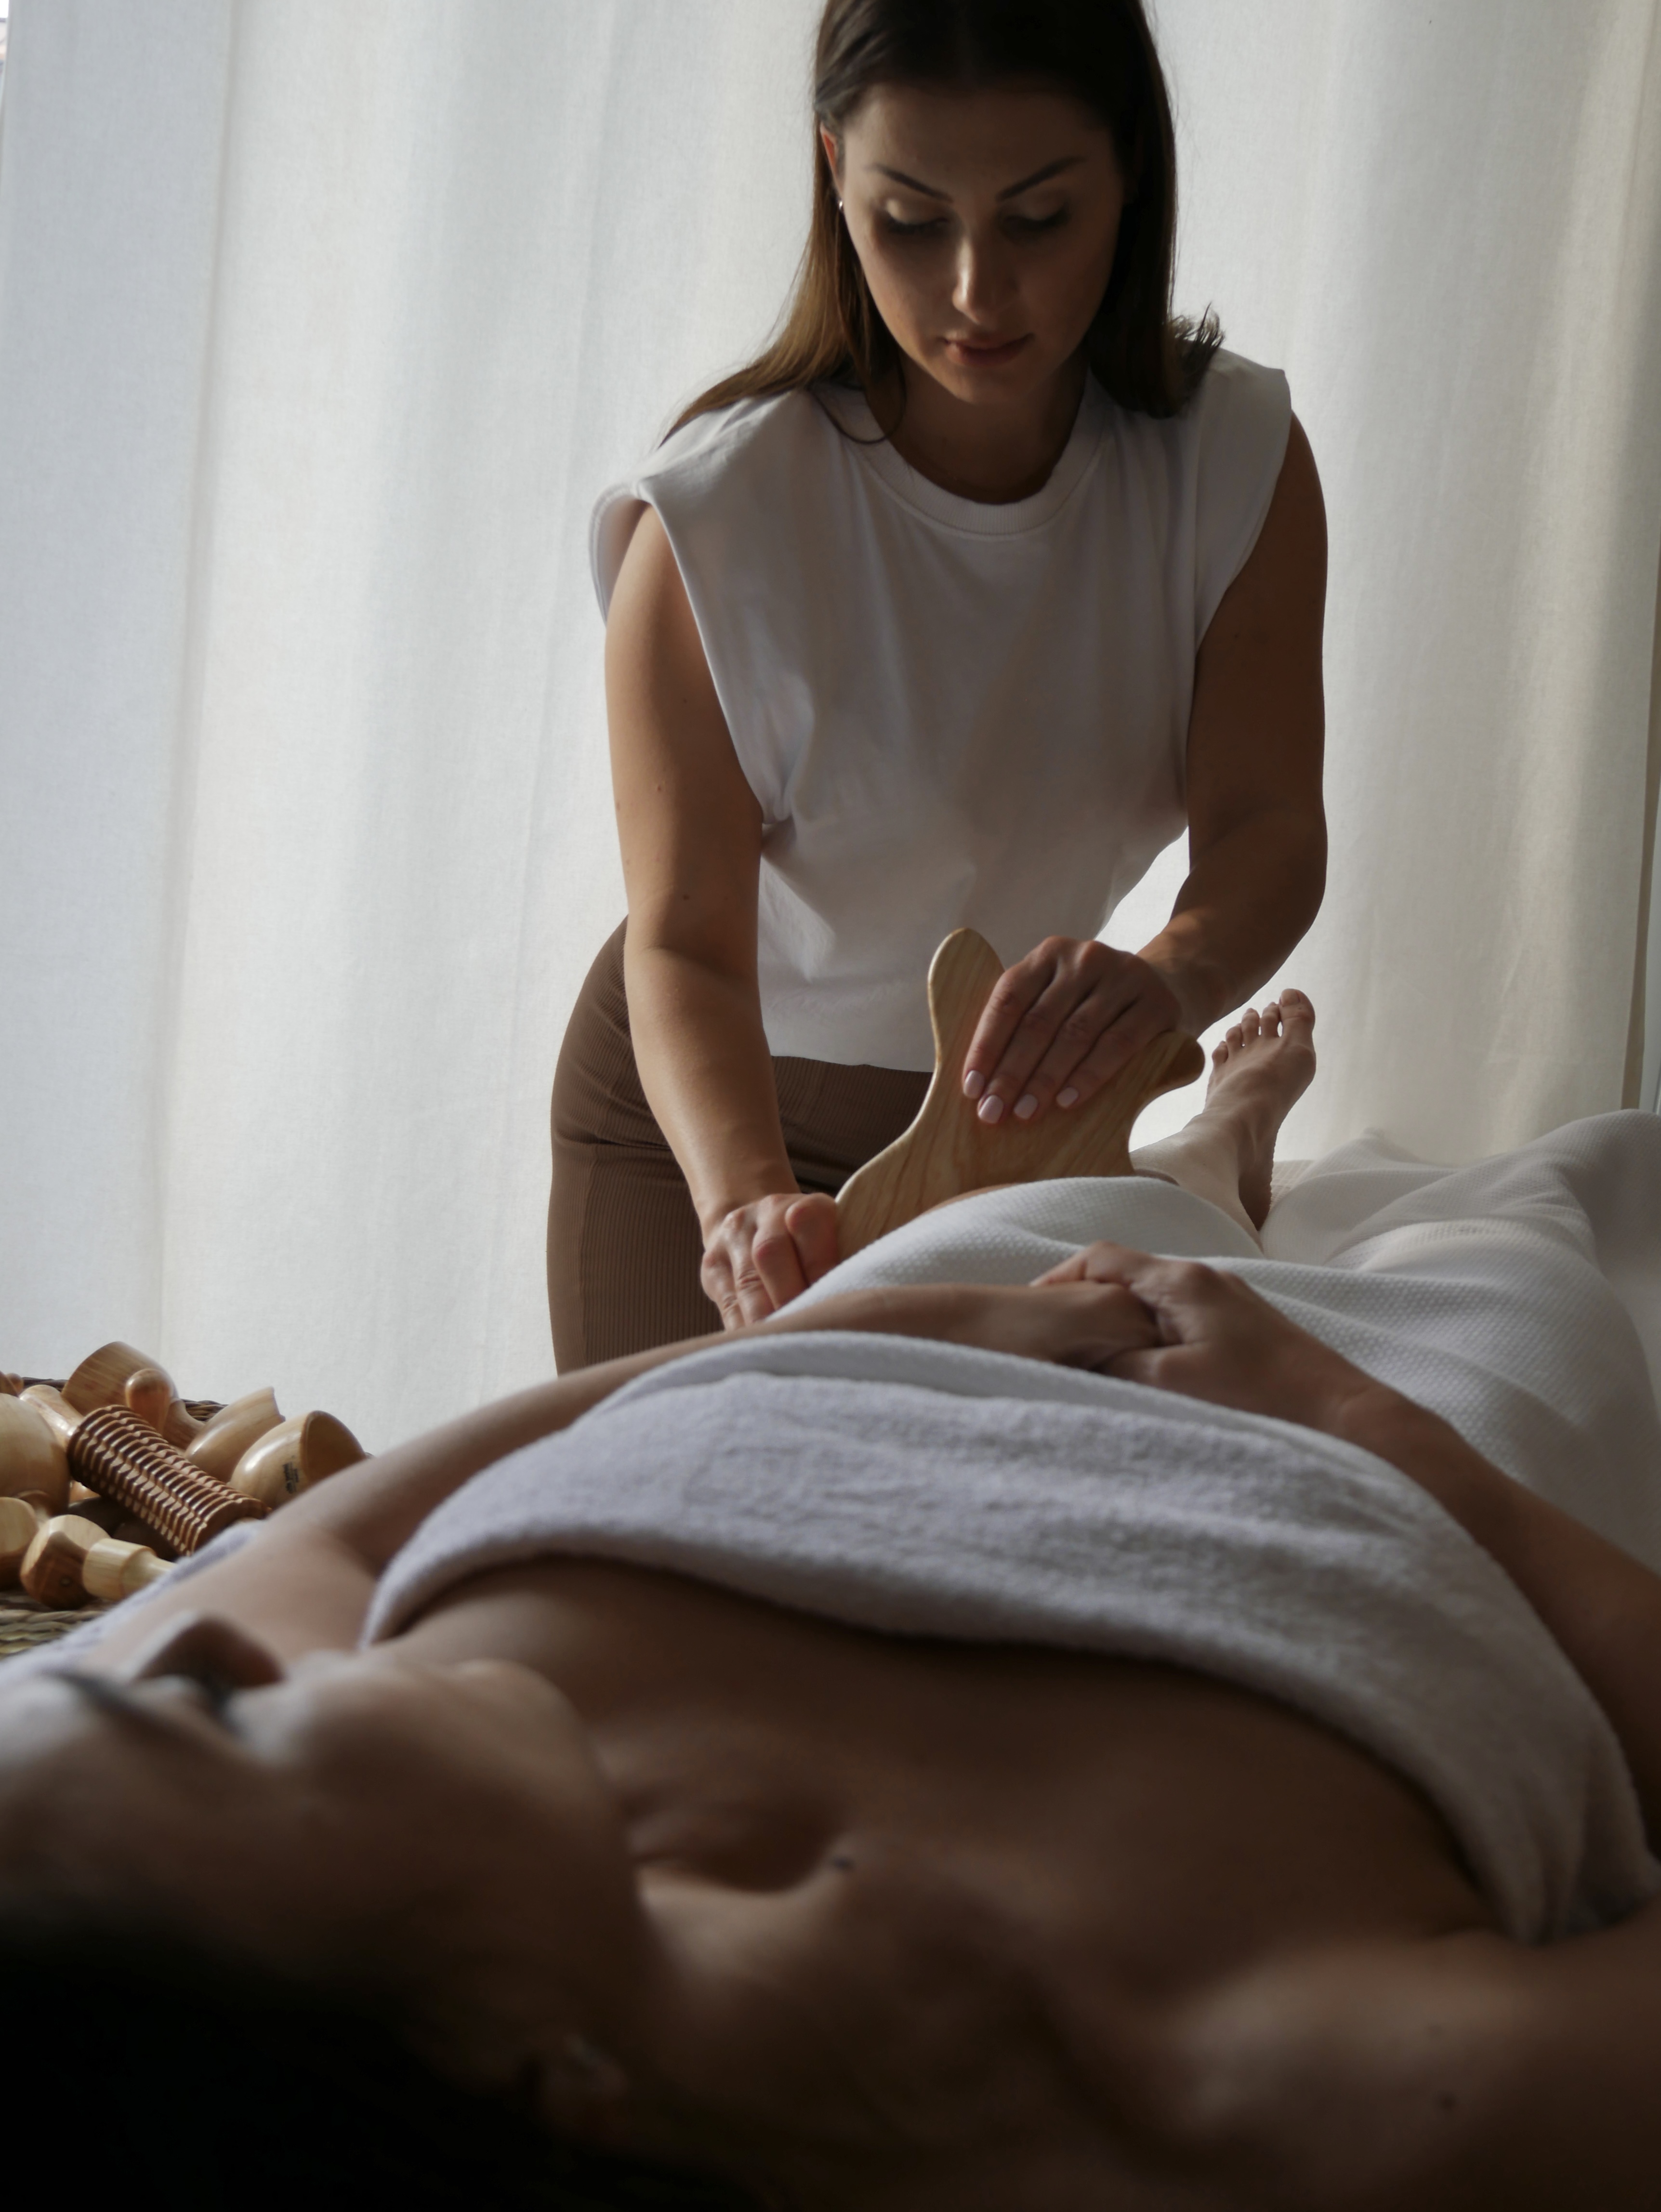 Esthéticienne masseuse à Chelles et à votre domicile. 
Plus d’informations sur l’instagram : @sevensenses.paris